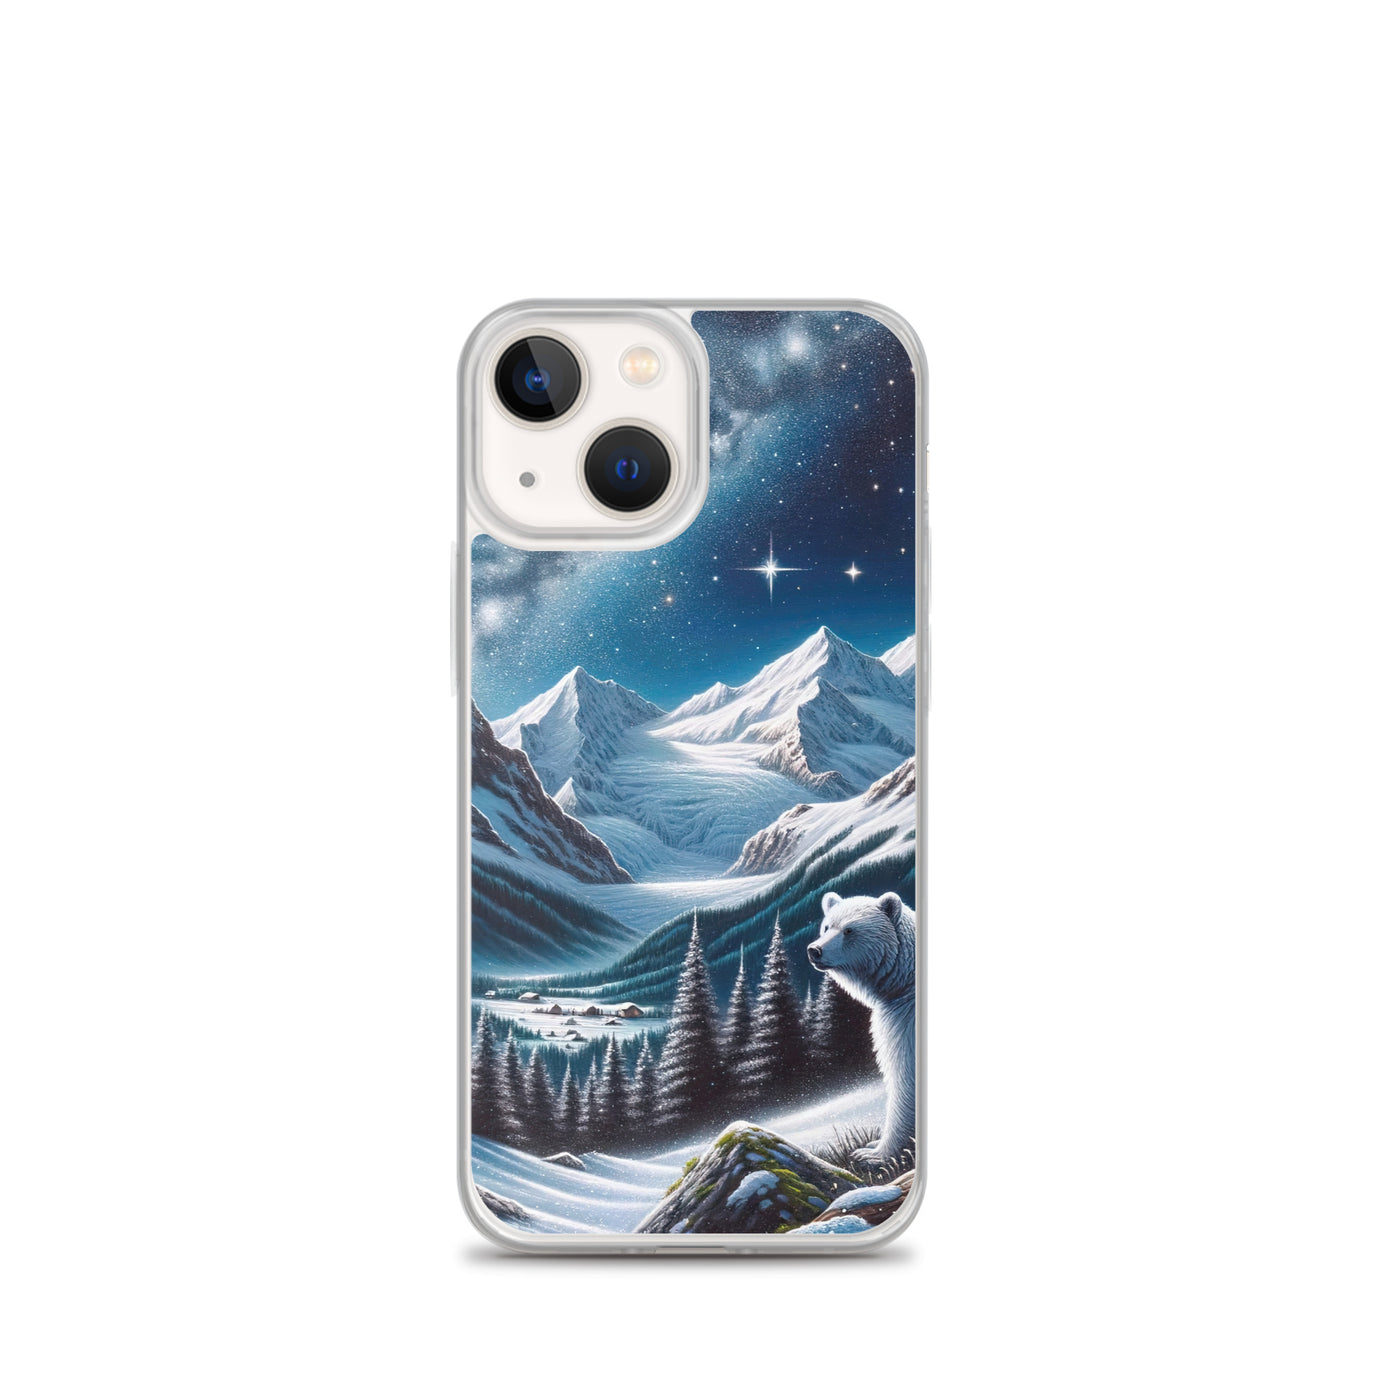 Sternennacht und Eisbär: Acrylgemälde mit Milchstraße, Alpen und schneebedeckte Gipfel - iPhone Schutzhülle (durchsichtig) camping xxx yyy zzz iPhone 13 mini